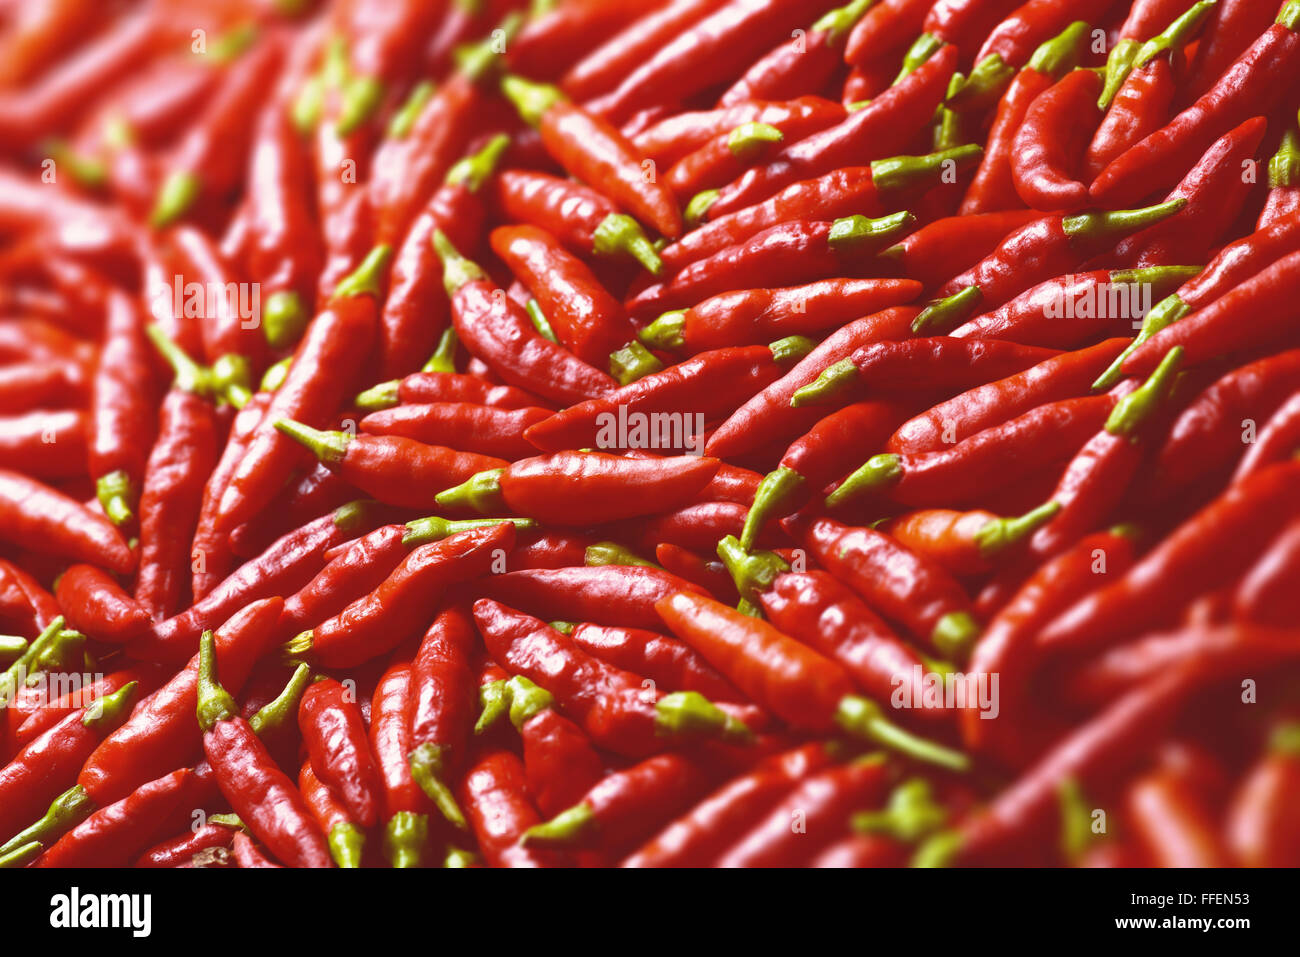 Immagine di peperoni rossi con la profondità di campo e la messa a fuoco al centro. Foto Stock